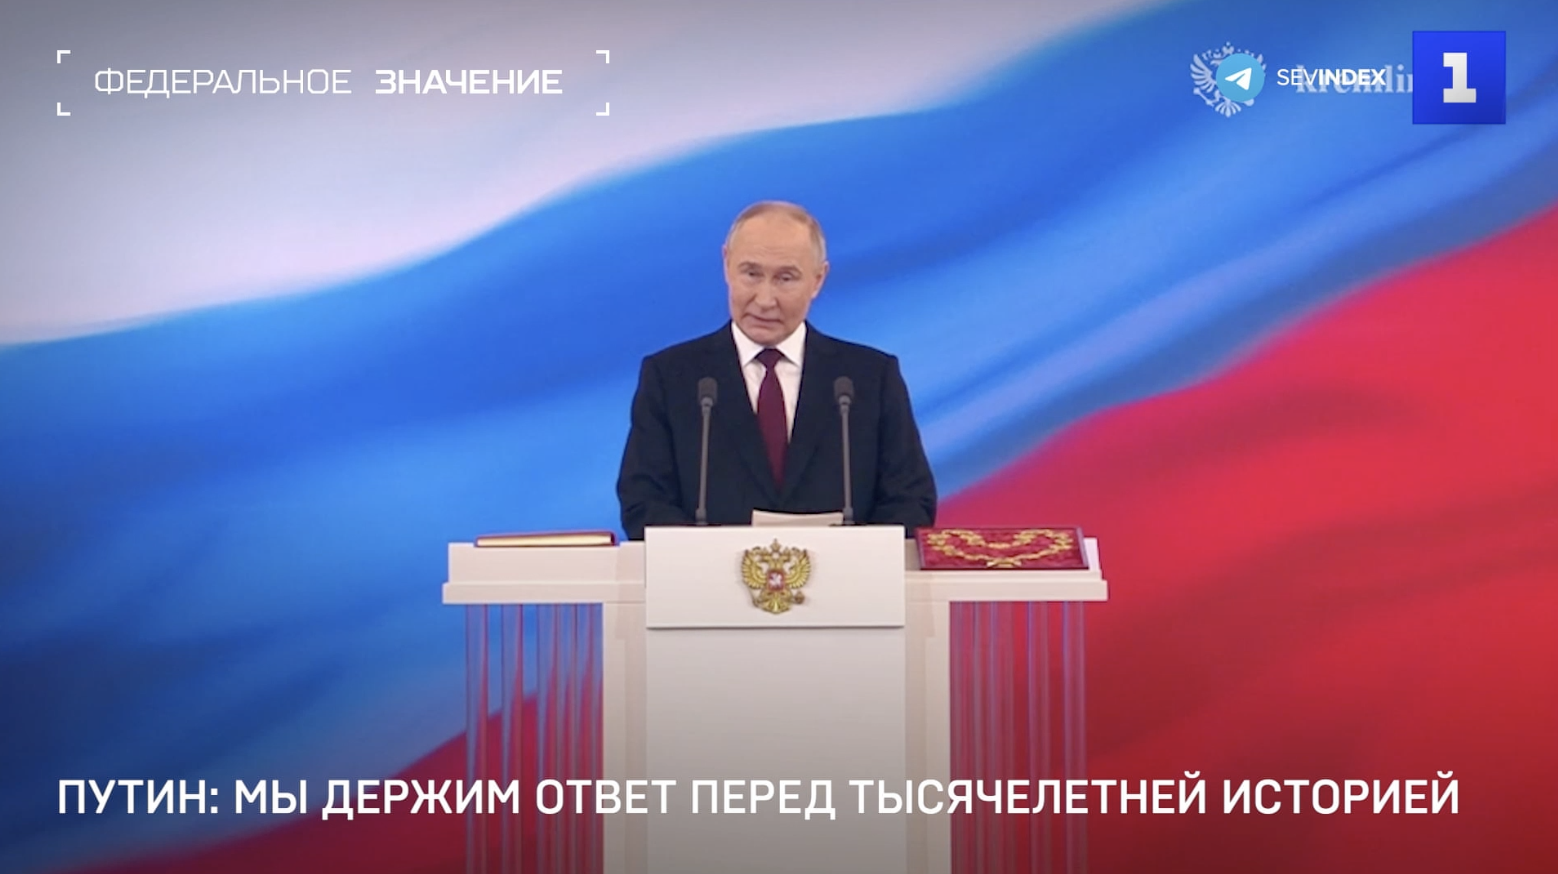 Инаугурация Путина: взгляд из Севастополя